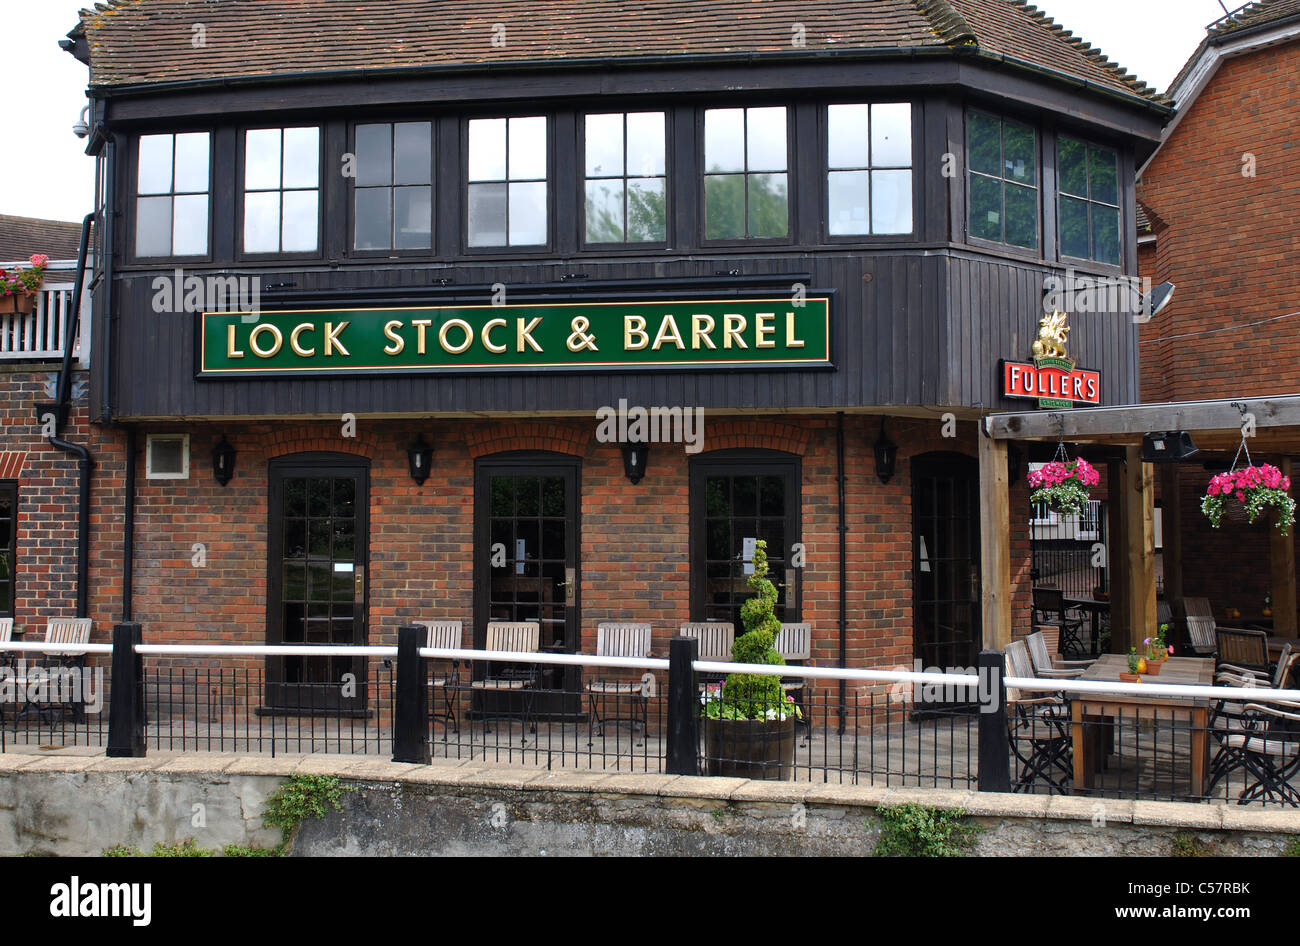 Bloccare le scorte e canna pub, Newbury, Berkshire, Inghilterra, Regno Unito Foto Stock